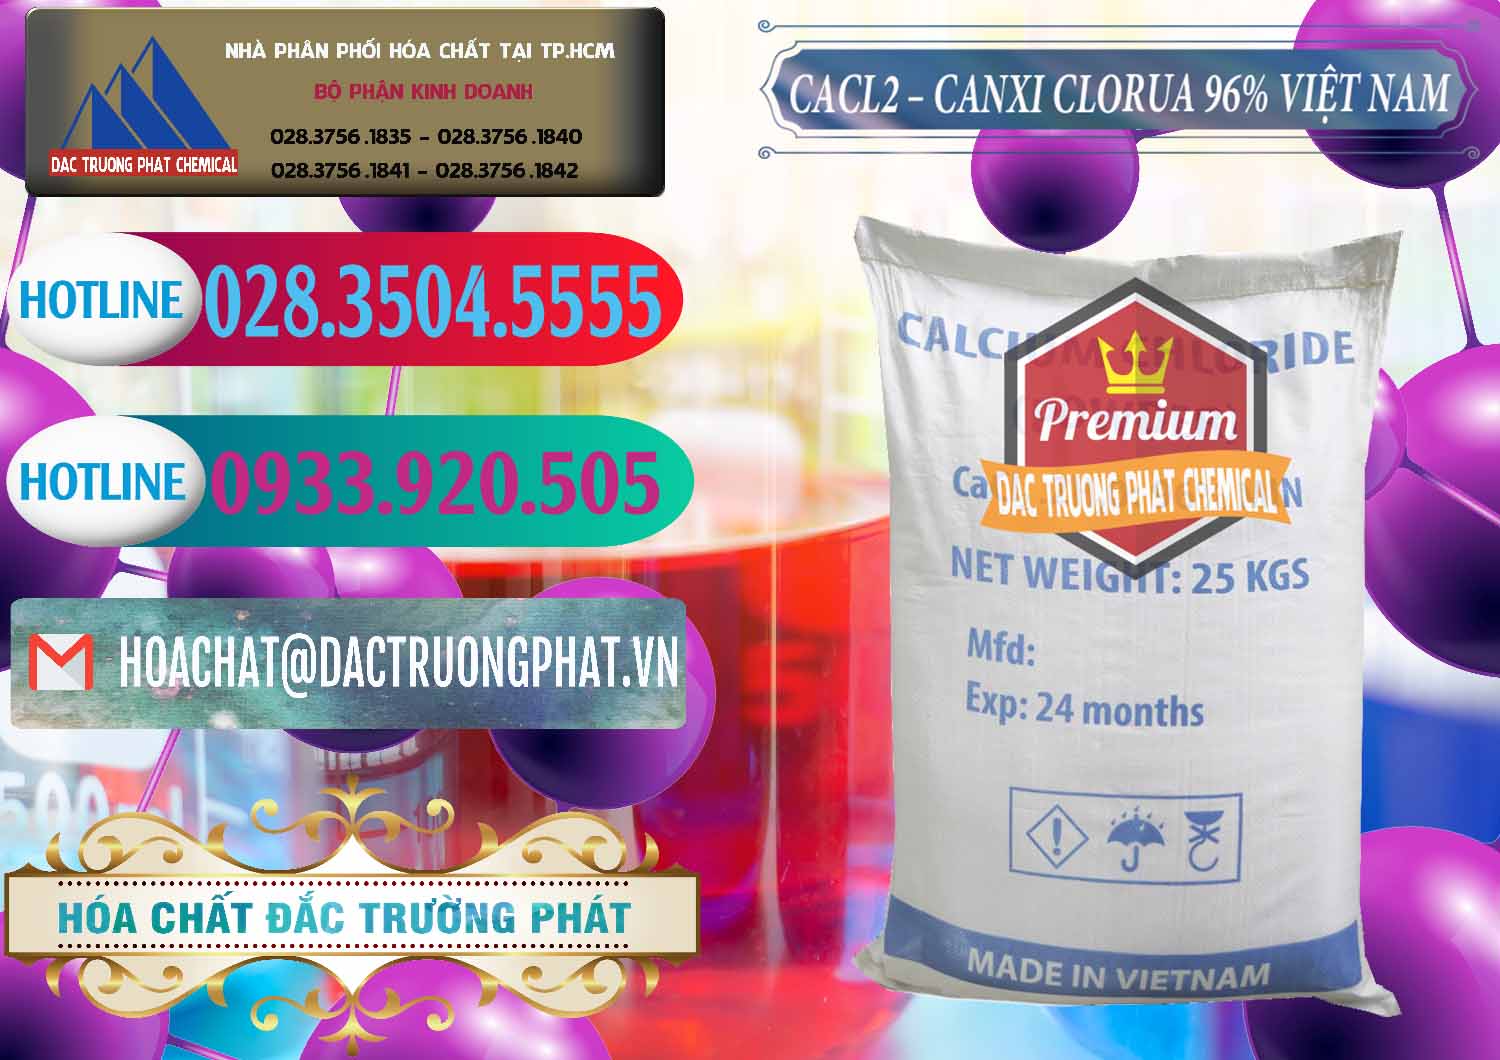 Nơi chuyên cung ứng - phân phối CaCl2 – Canxi Clorua 96% Việt Nam - 0236 - Chuyên cung ứng & phân phối hóa chất tại TP.HCM - truongphat.vn